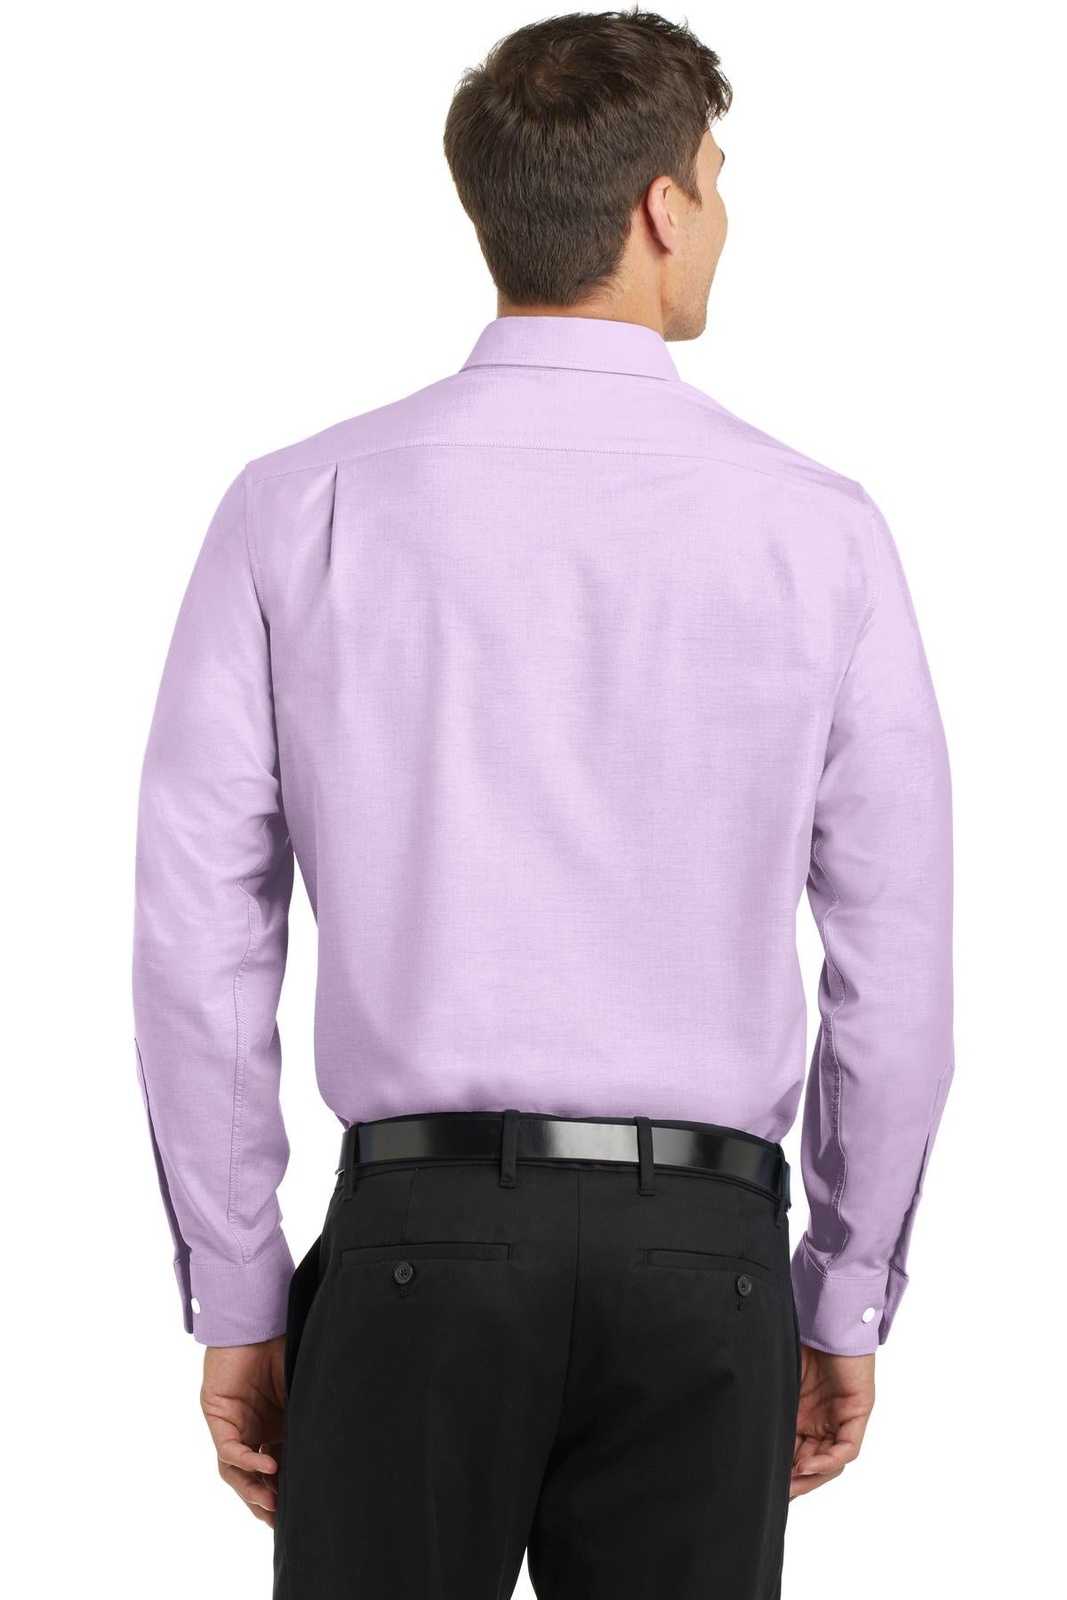 Port Authority S658 Superpro Oxford Shirt - Soft Purple - HIT a Double - 1